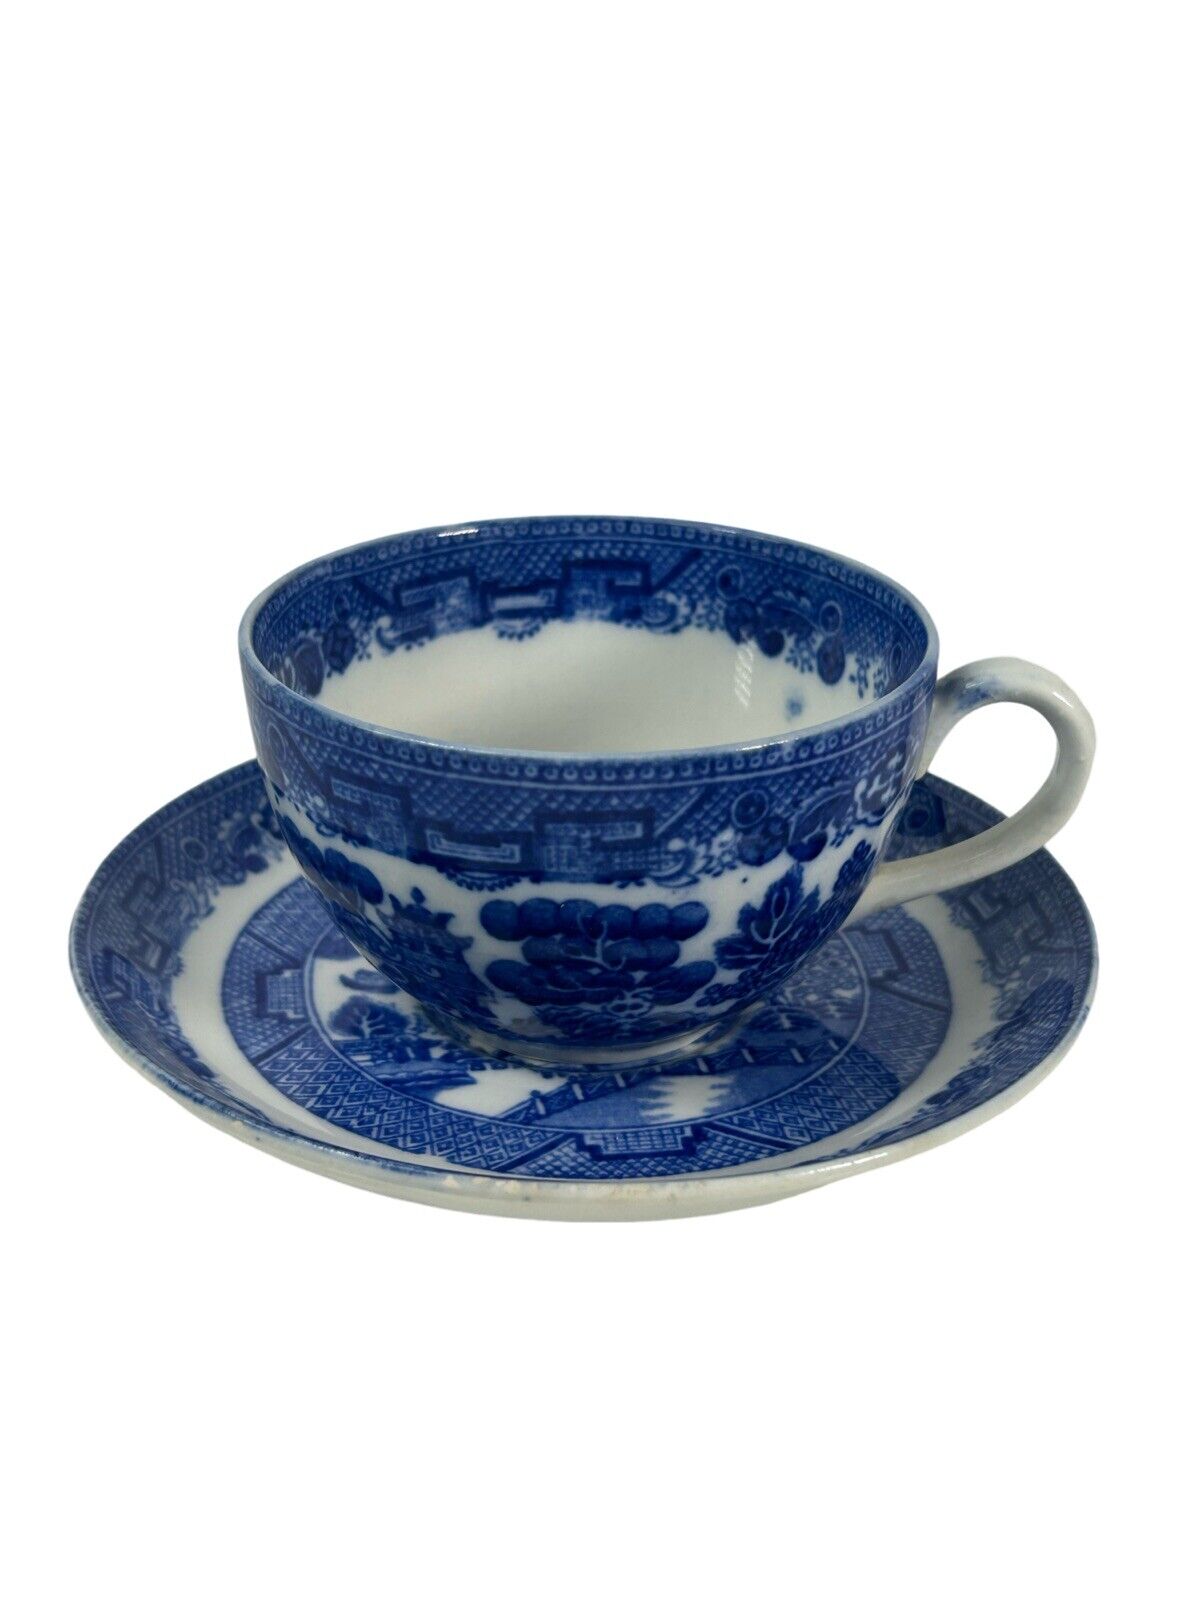 Allerton’s Willow Flow Blue Tea Cup & Saucer Set 1911-1929 Antique (7 Available)